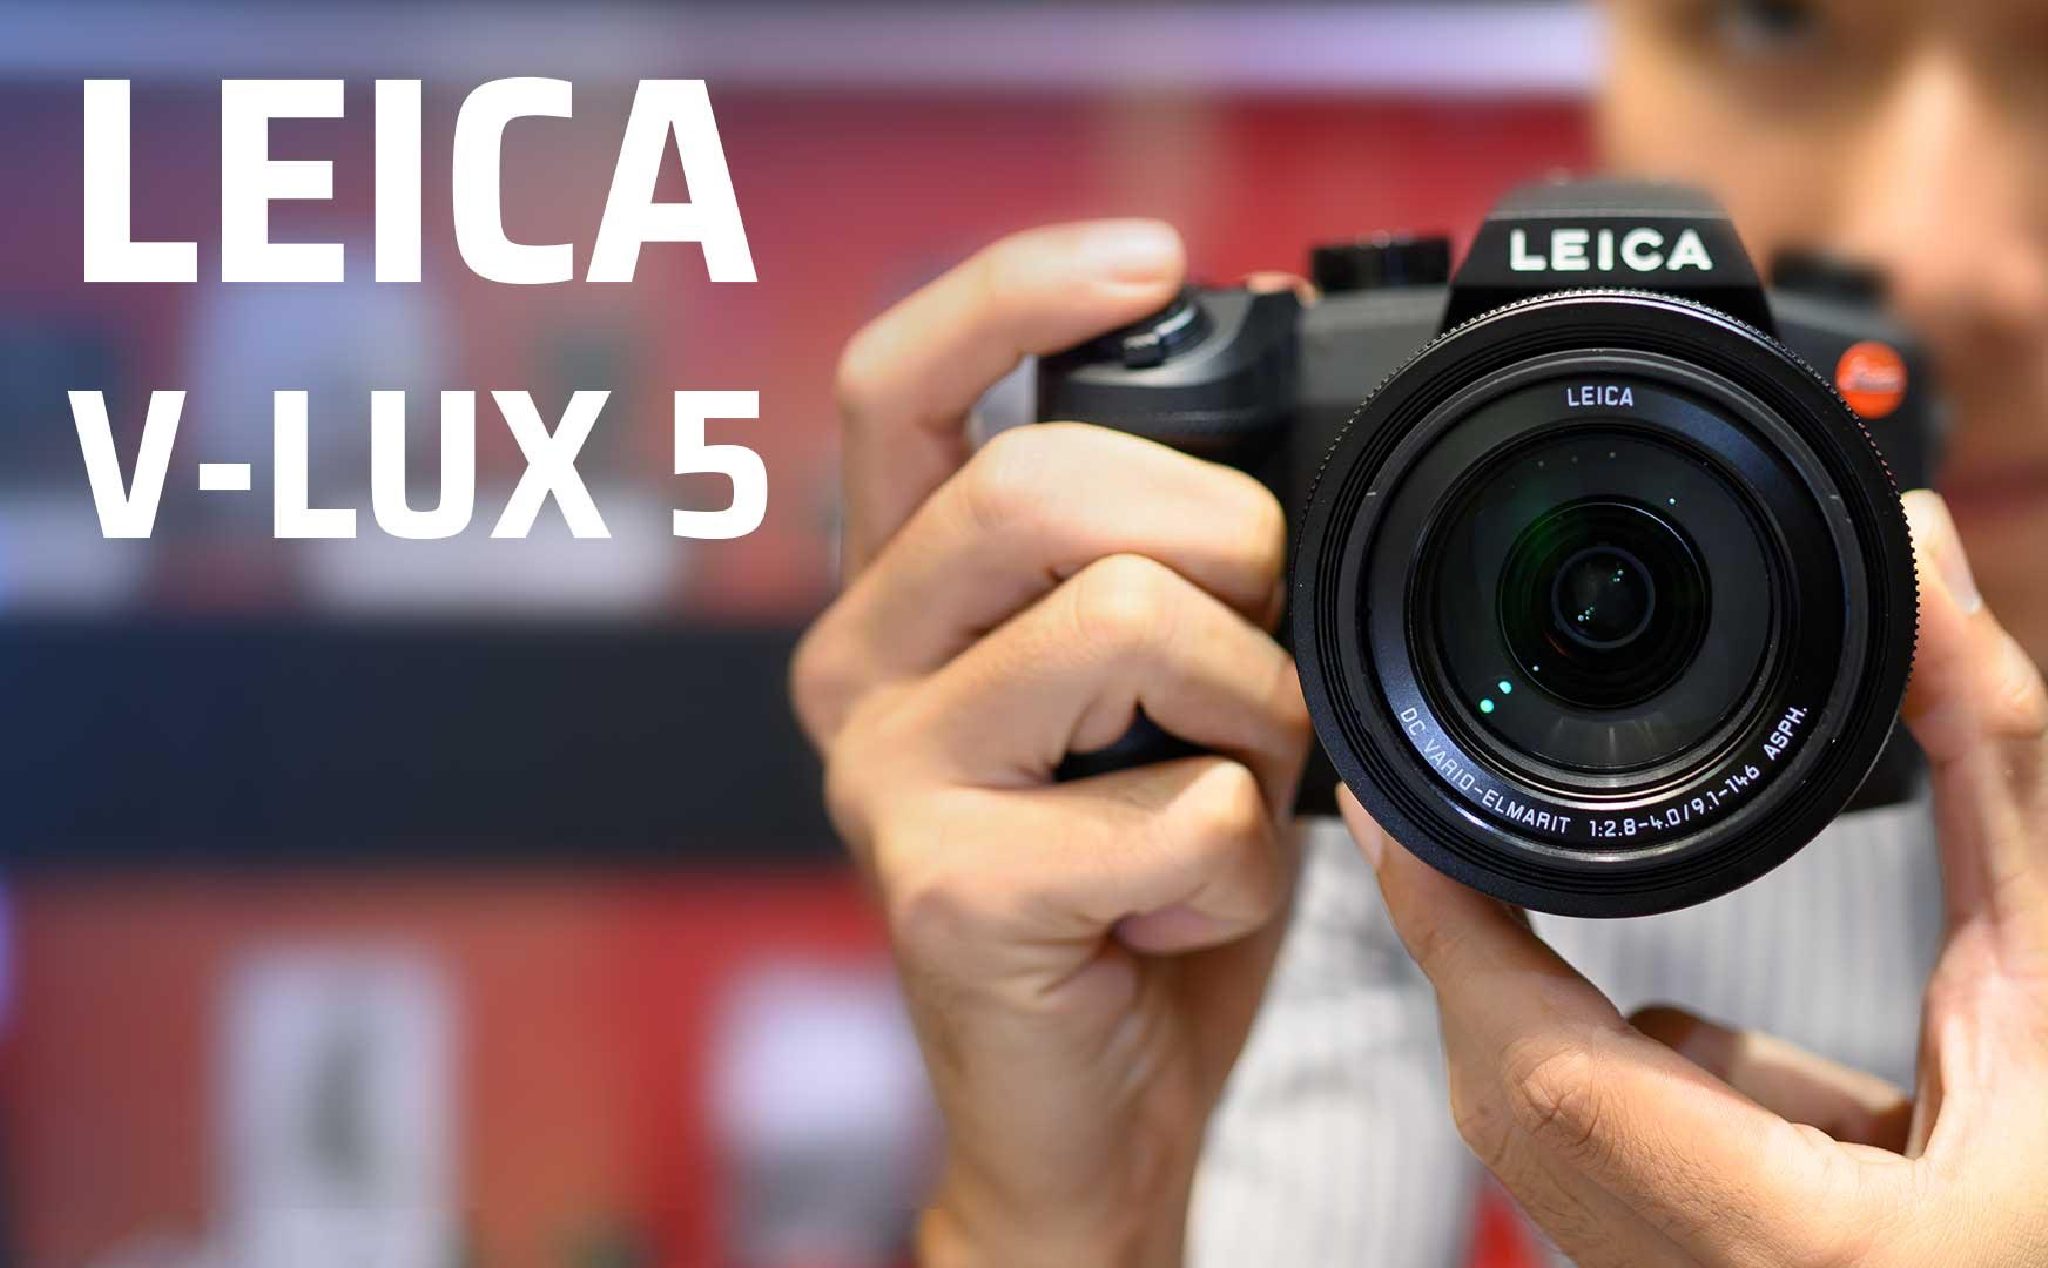 Leica V-Lux 5: Nếu bạn đam mê chụp ảnh và tìm kiếm một chiếc camera chuyên nghiệp để ghi lại những khoảnh khắc đẹp nhất, Leica V-Lux 5 là lựa chọn hoàn hảo cho bạn. Với khả năng chụp ảnh ấn tượng giống như một chiếc máy ảnh DSLR, Leica V-Lux 5 còn có thể đáp ứng nhu cầu quay phim chất lượng cao của bạn. Thật tuyệt vời! Hãy nhấp chuột để xem hình ảnh đẹp của Leica V-Lux 5 ngay.